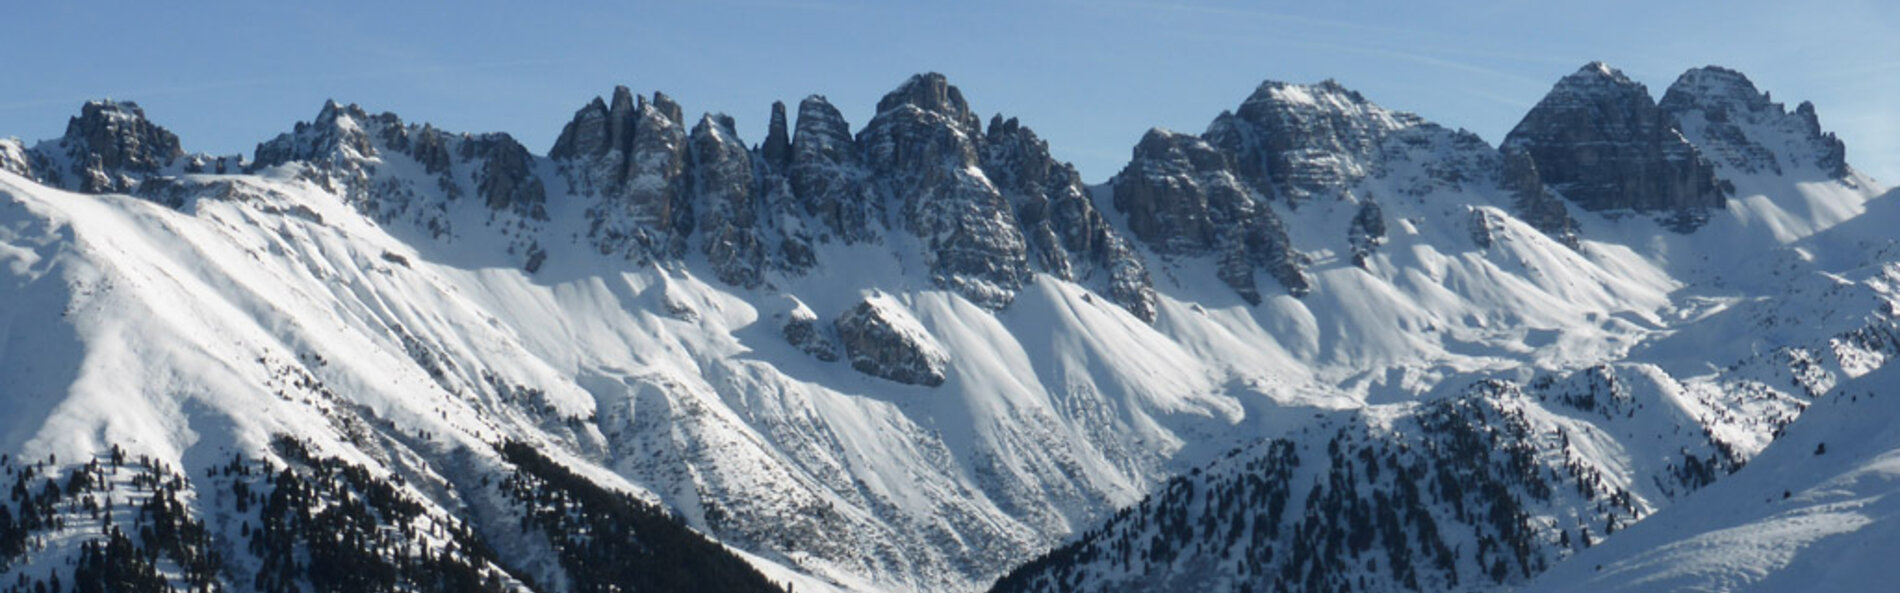 Panoramabild der tief verschneiten Kalkkögel, einer stark zerklüfteten Bergkette. © Land Tirol, Klaus Pietersteiner